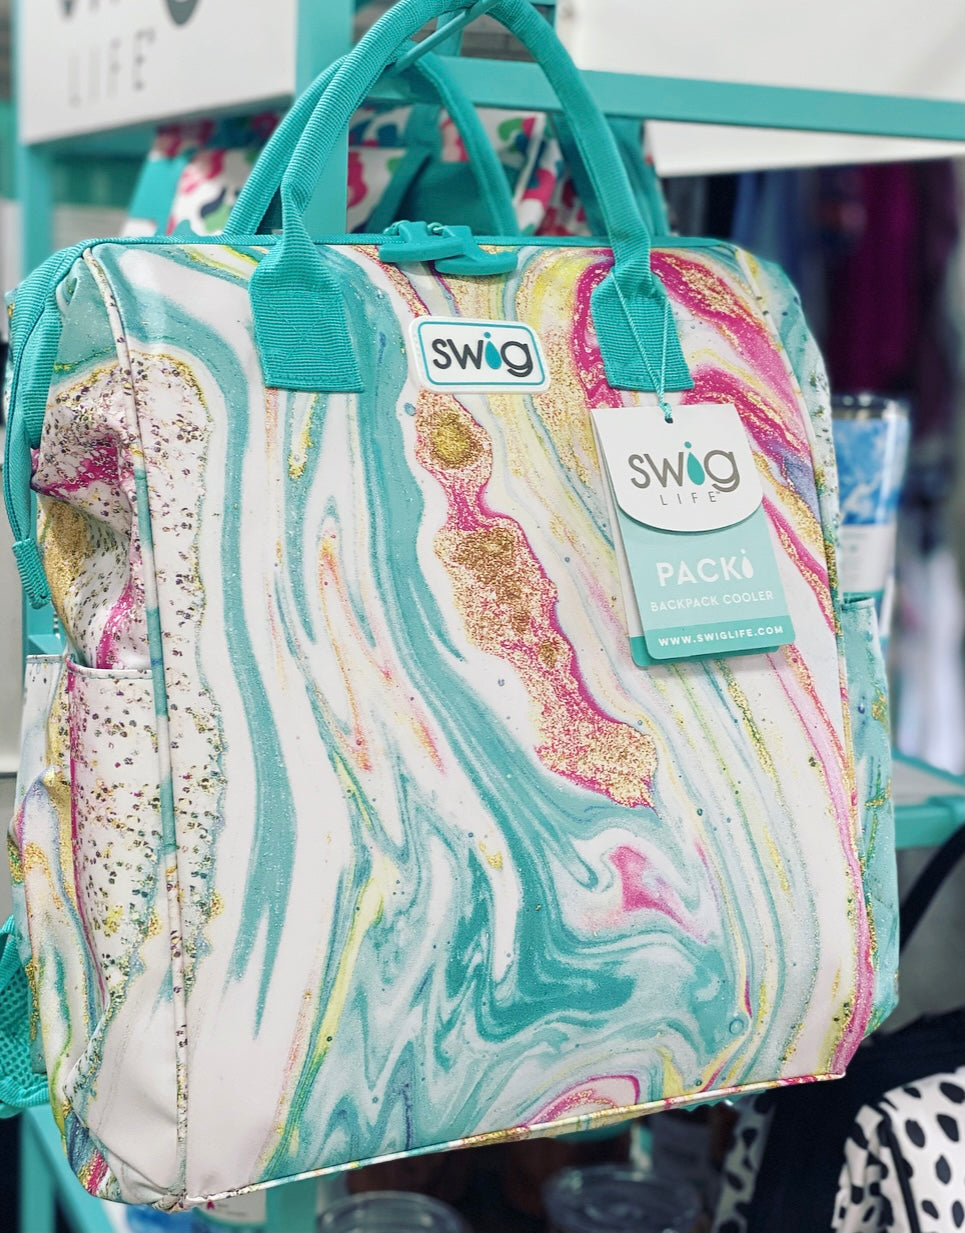 Swig Backpack Cooler – Shop L&B Boutique